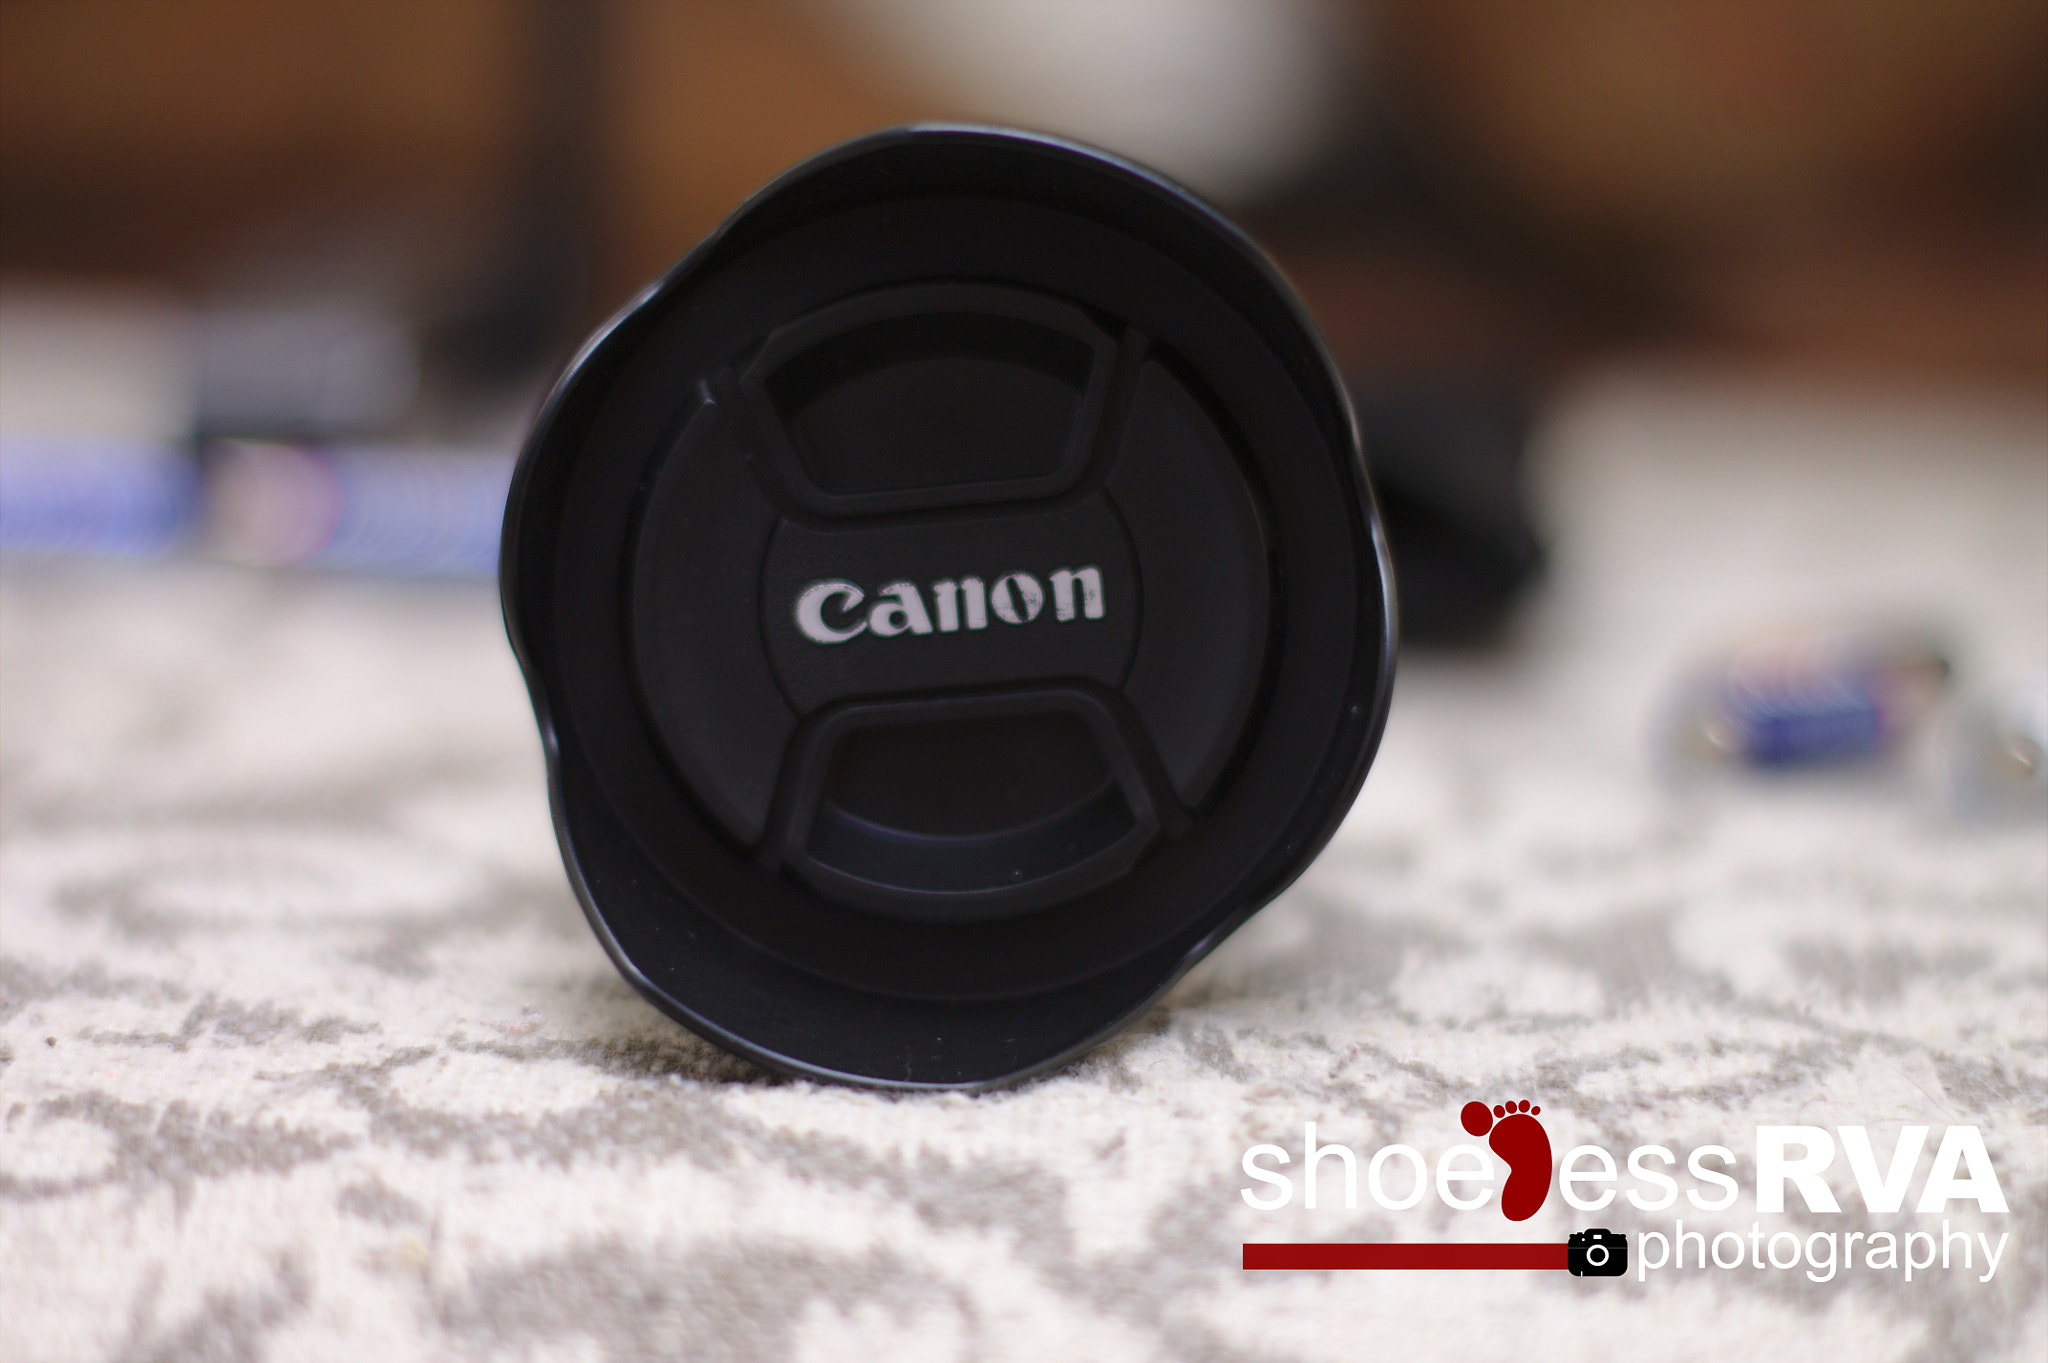 Canon EOS 1100D (EOS Rebel T3 / EOS Kiss X50) sample photo. Shooting a lens through a lens... photography